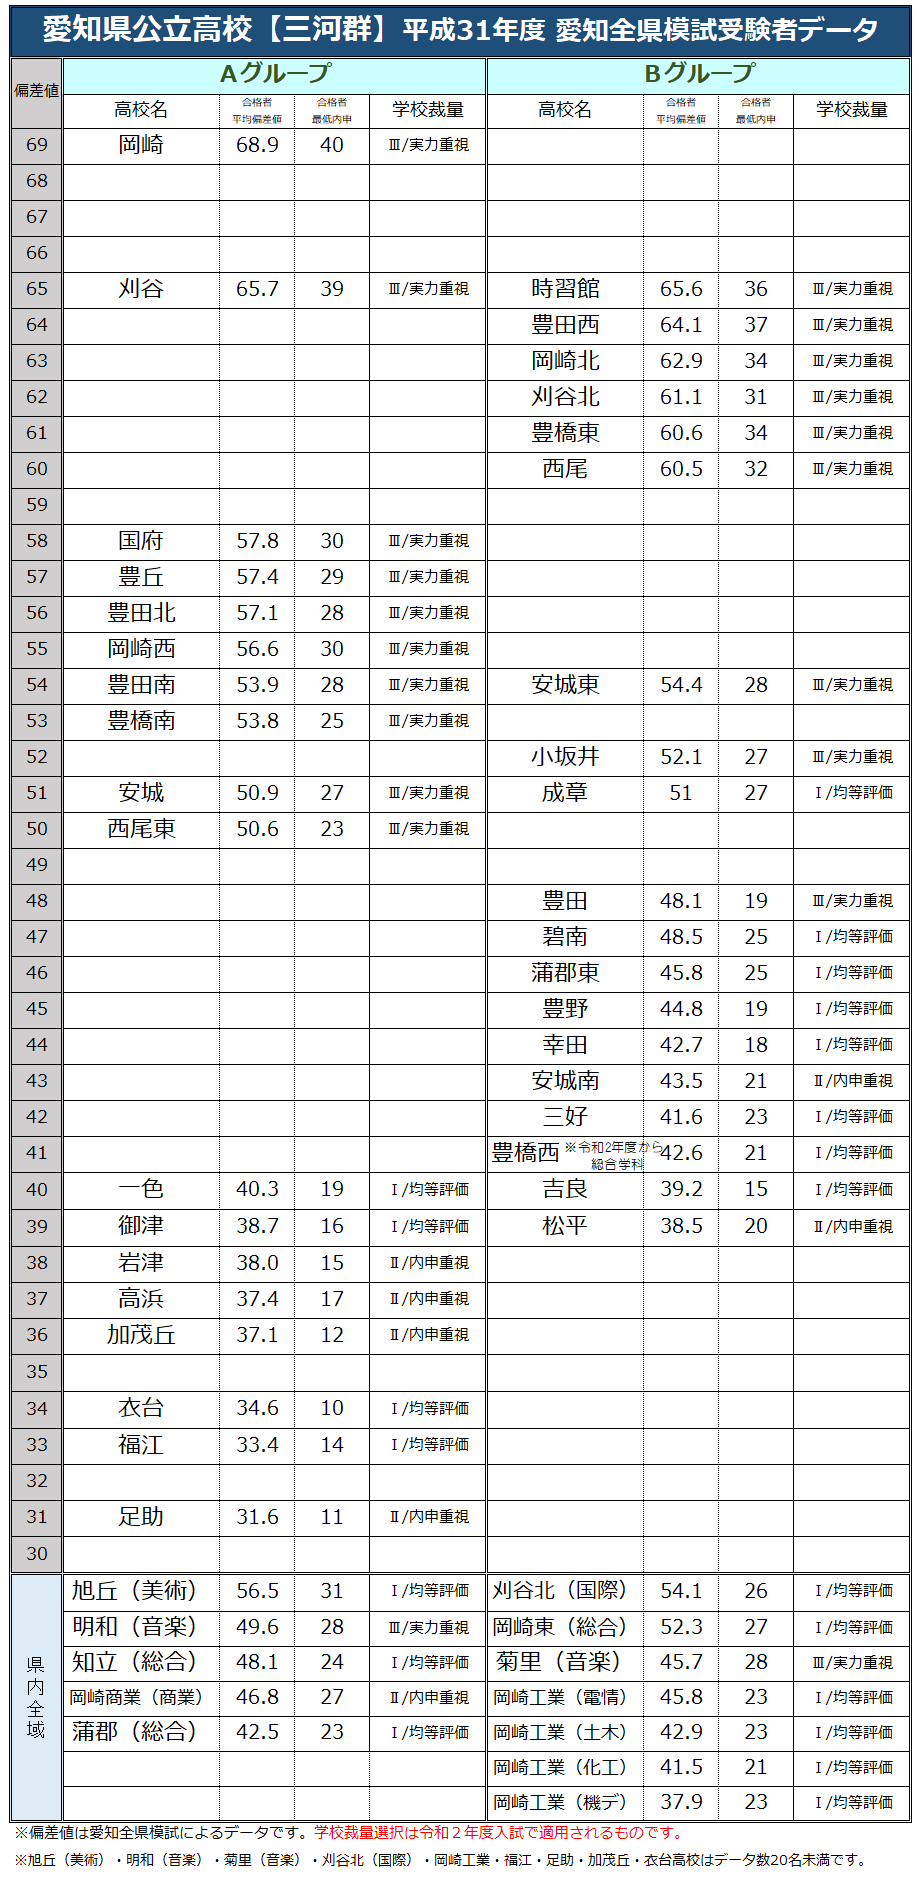 愛知県公立高校【三河群】ランキング2019／合格者平均偏差値・最低内申